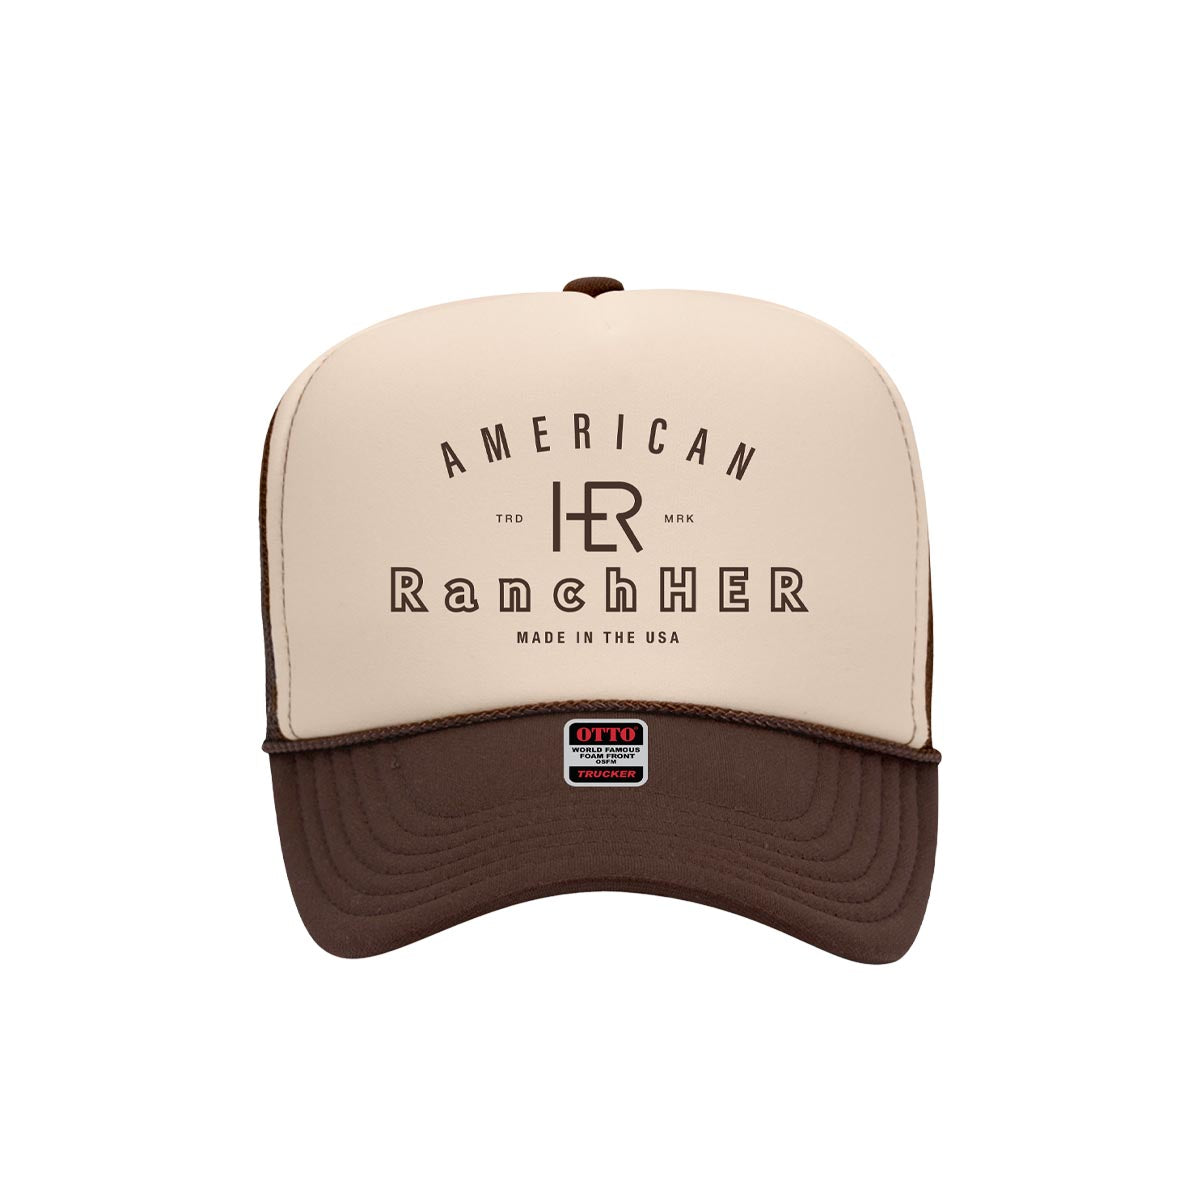 "American RanchHER" Foam Trucker Cap